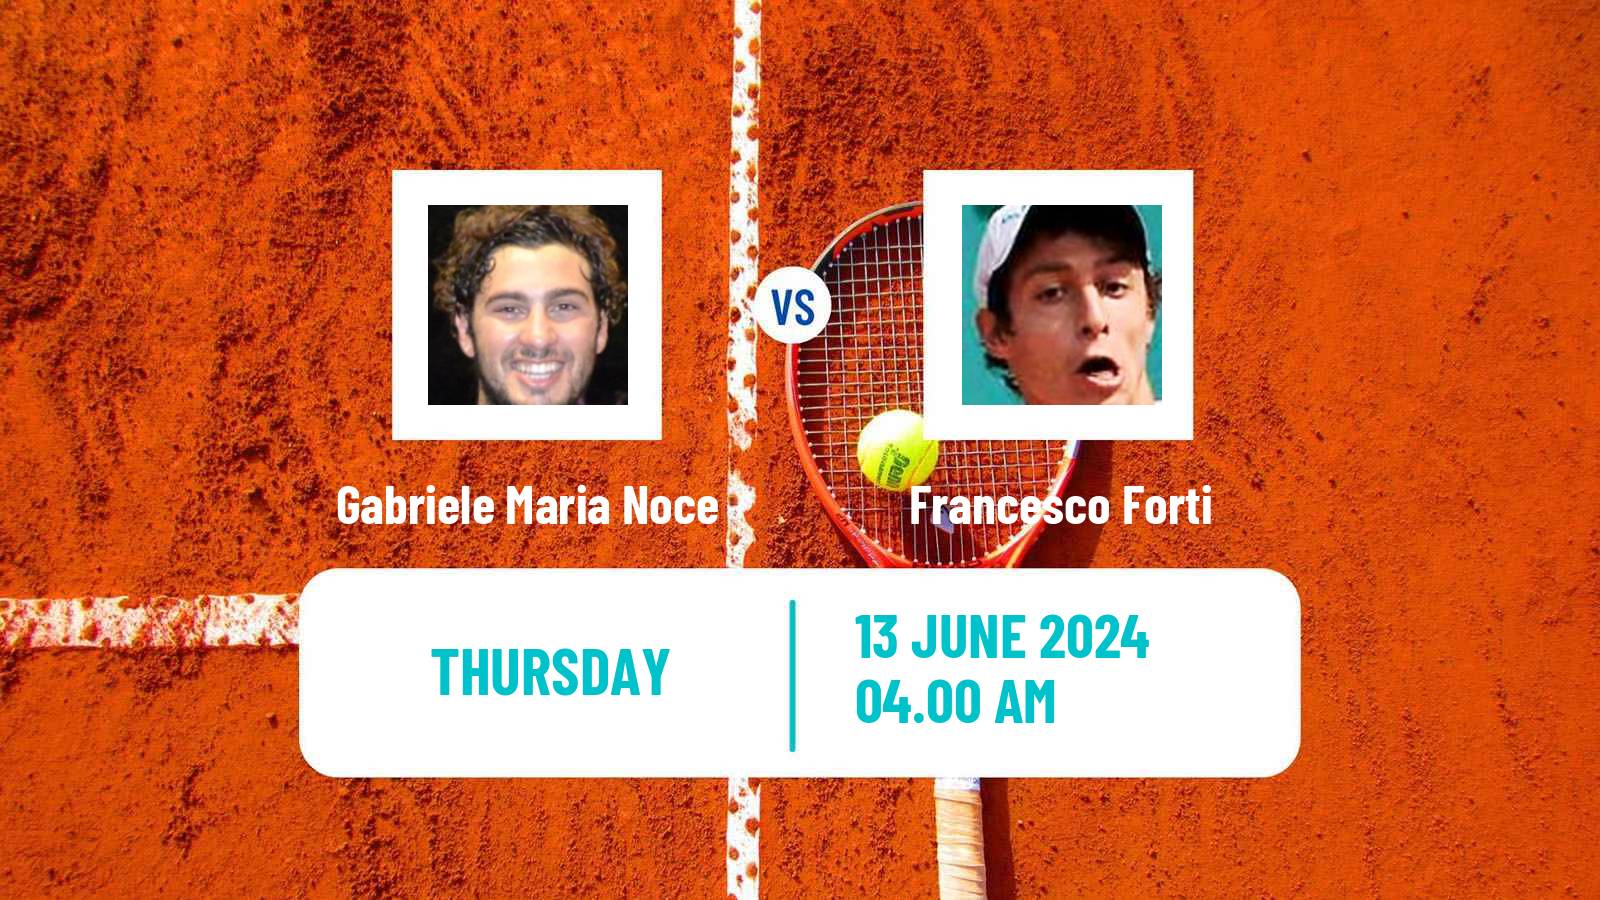 Tennis ITF M15 Chieti Men Gabriele Maria Noce - Francesco Forti